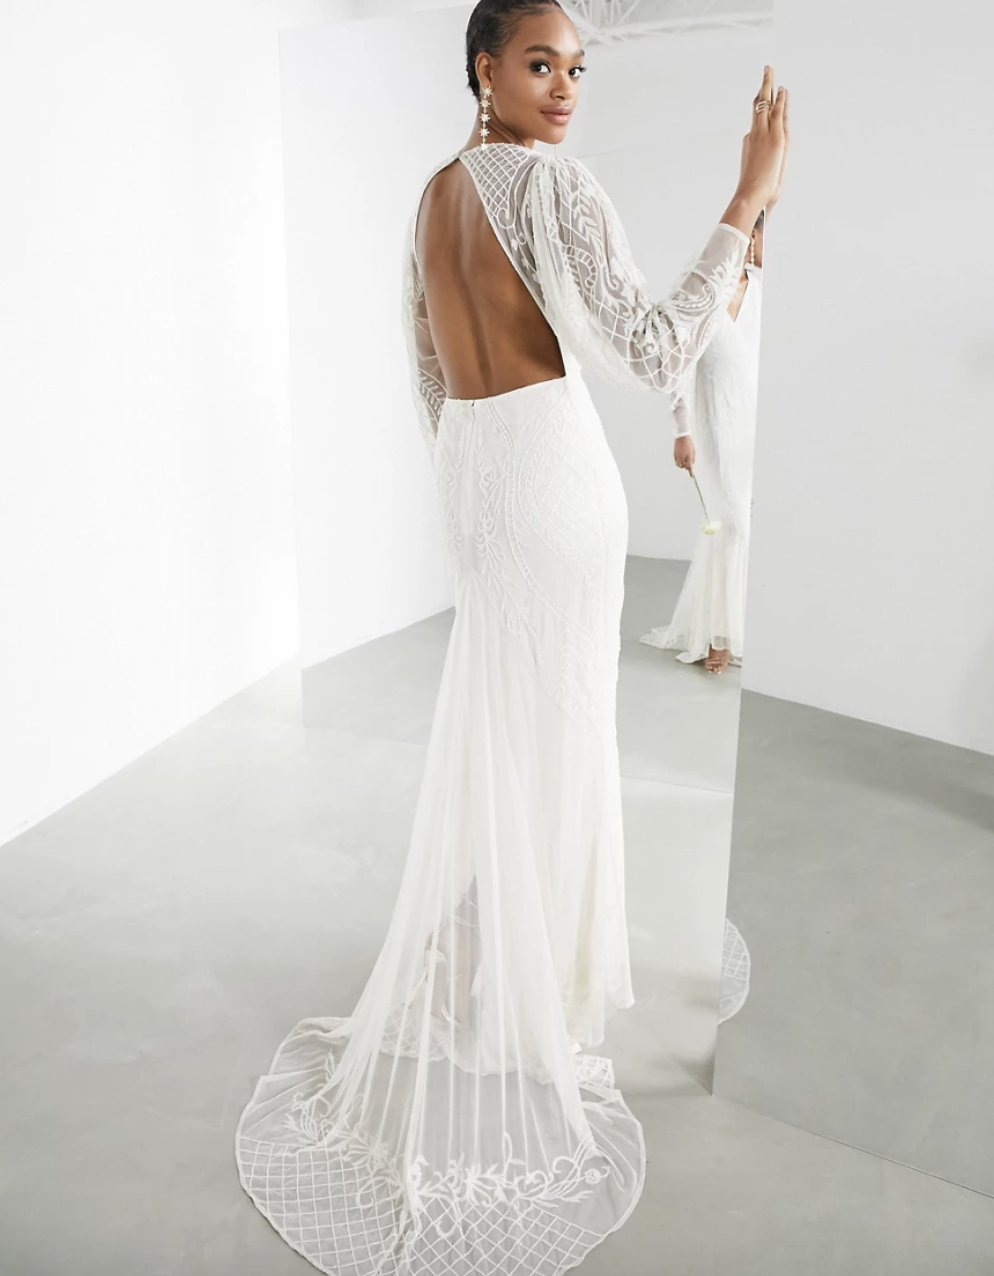 model wearing the white open back dress